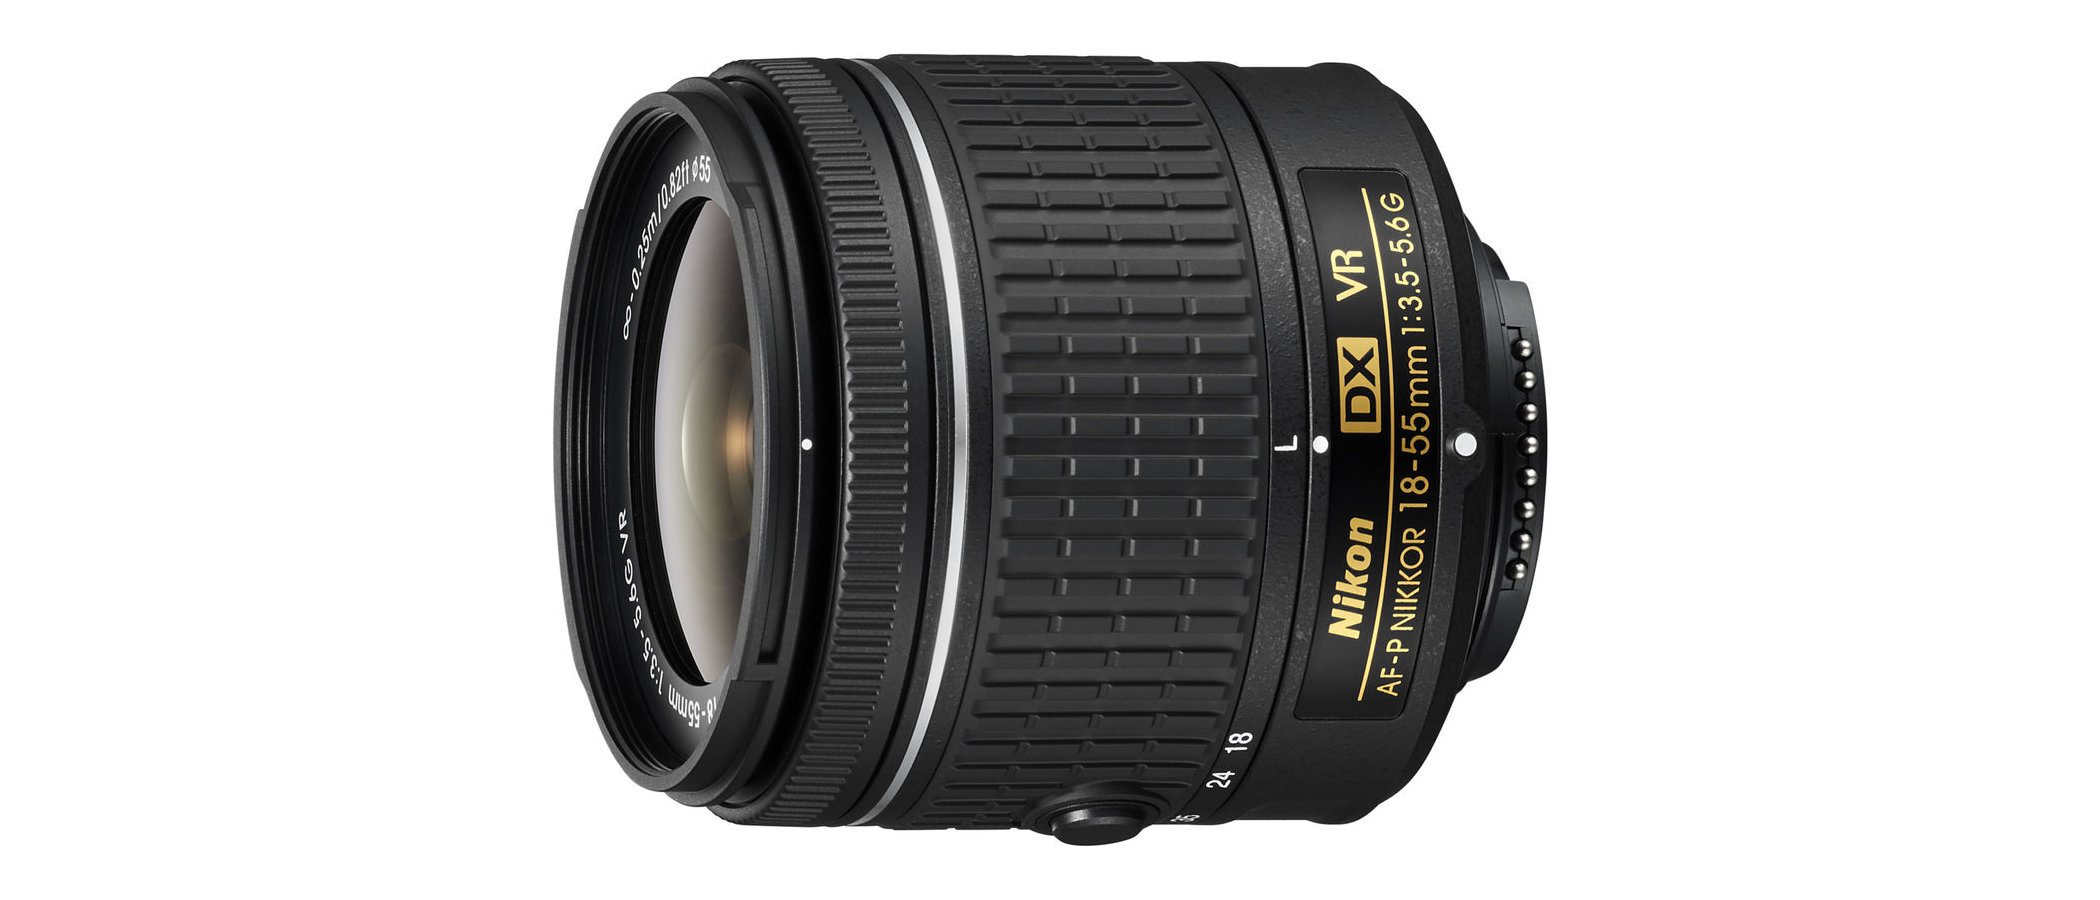 Nikon AF-P DX 18-55mm f/3.5-5.6G VR review | Digital Camera World